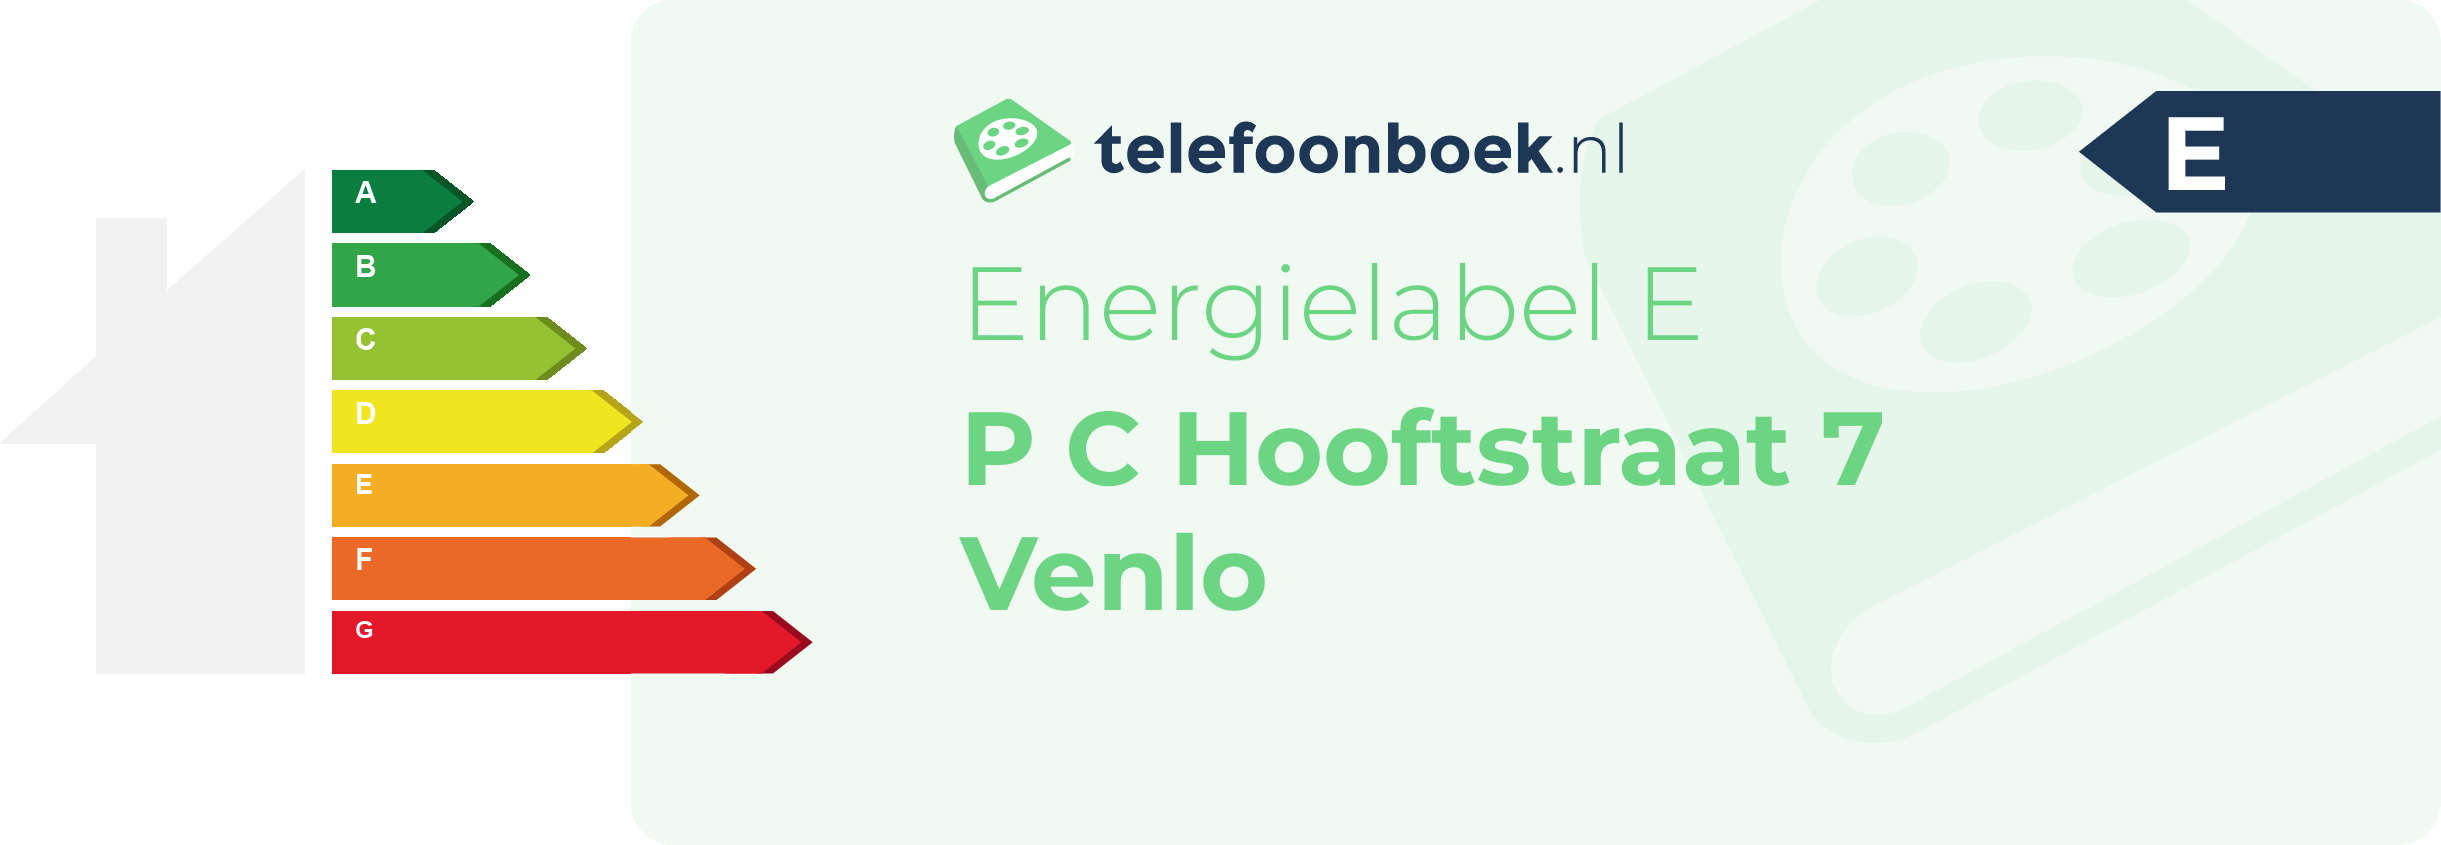 Energielabel P C Hooftstraat 7 Venlo